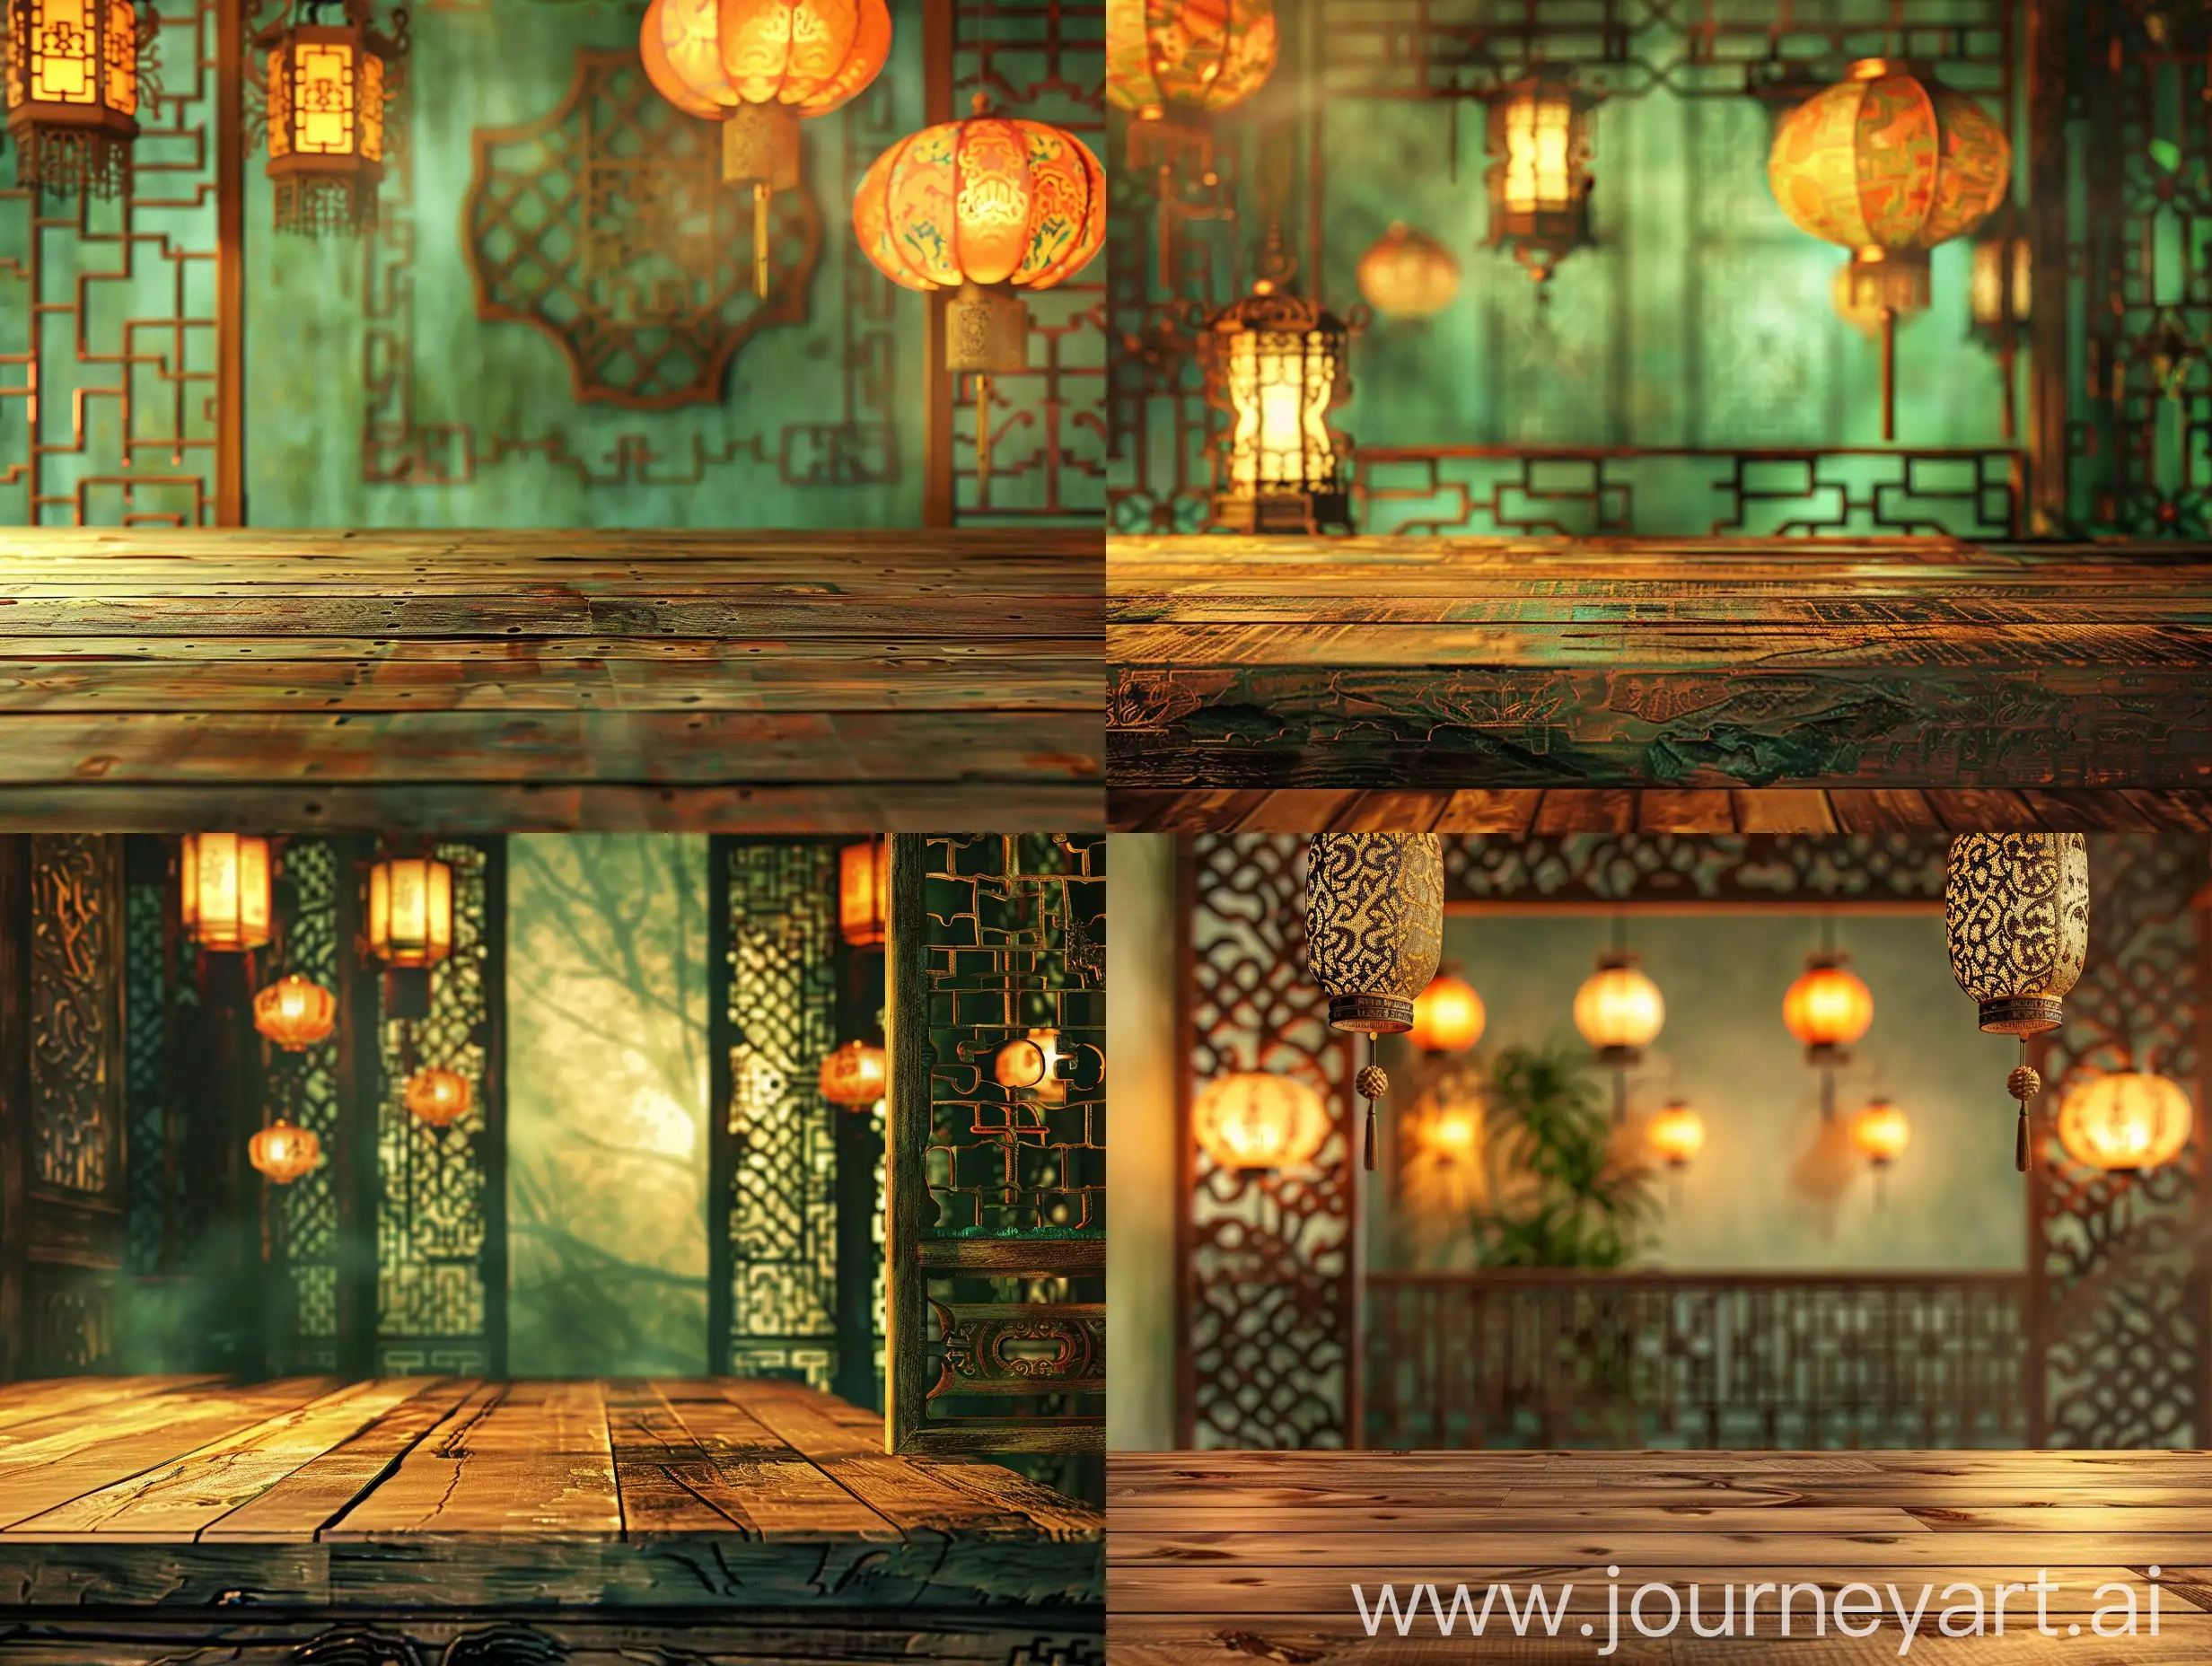 деревянный стол, на фоне китайские фонарики, декоративная решетка , все в китайском стиле, в зеленовато коричне охристых тонах, гиперреализм